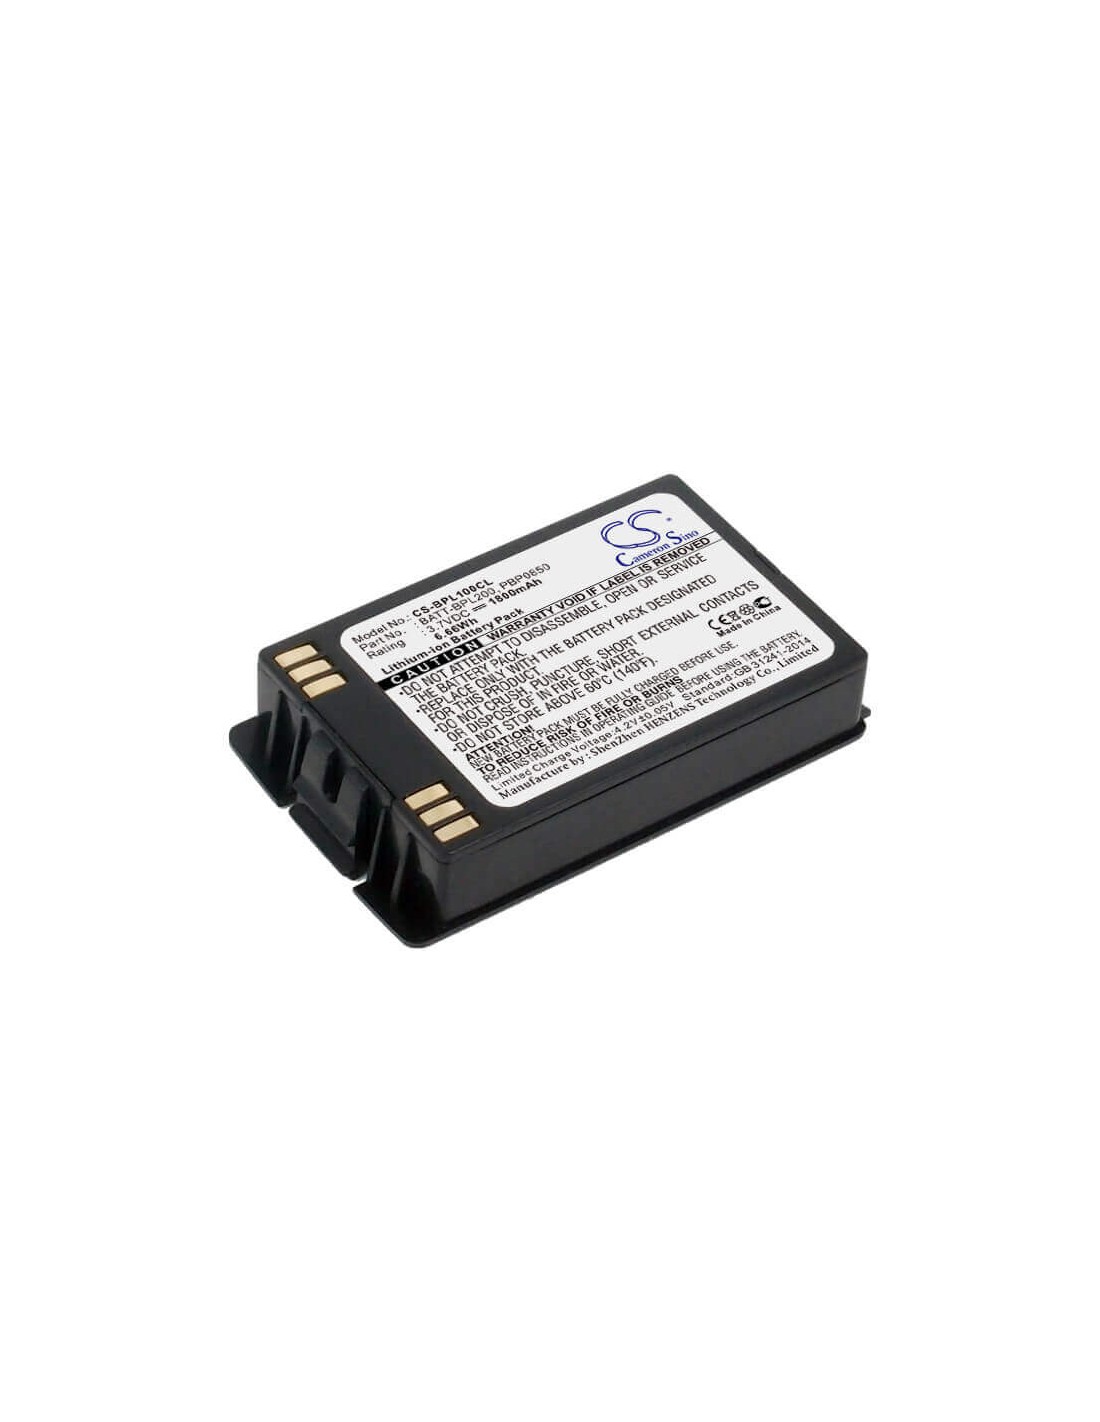 Battery for Nec, 381301, 381325, Mh150, Mh160 3.7V, 1800mAh - 6.66Wh